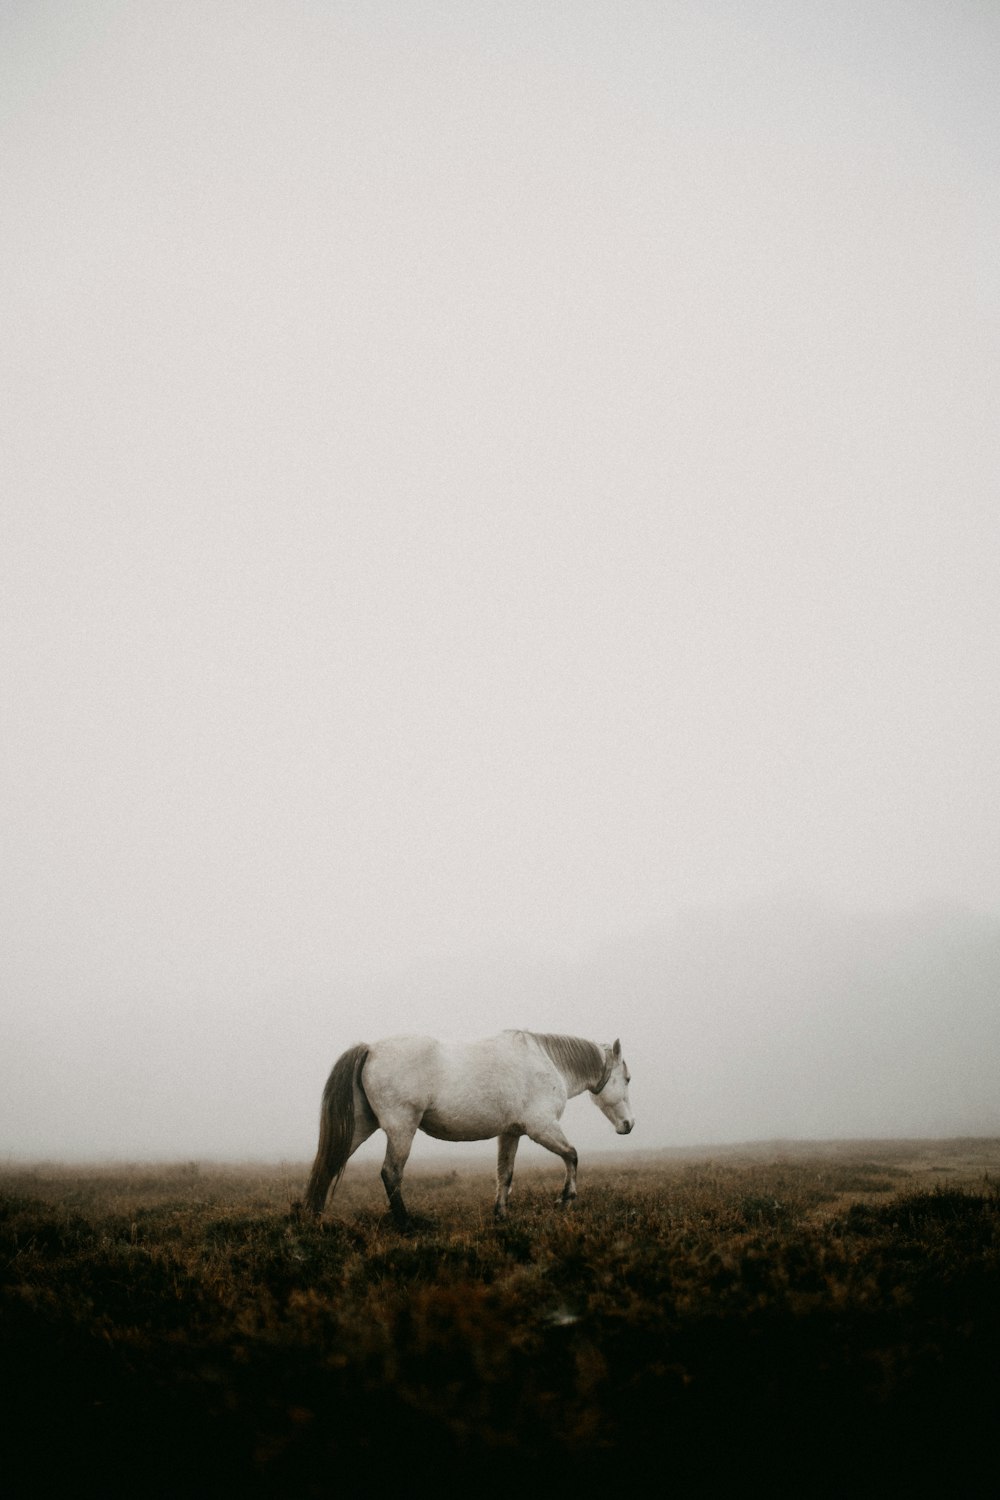 Un caballo blanco caminando por un campo cubierto de hierba